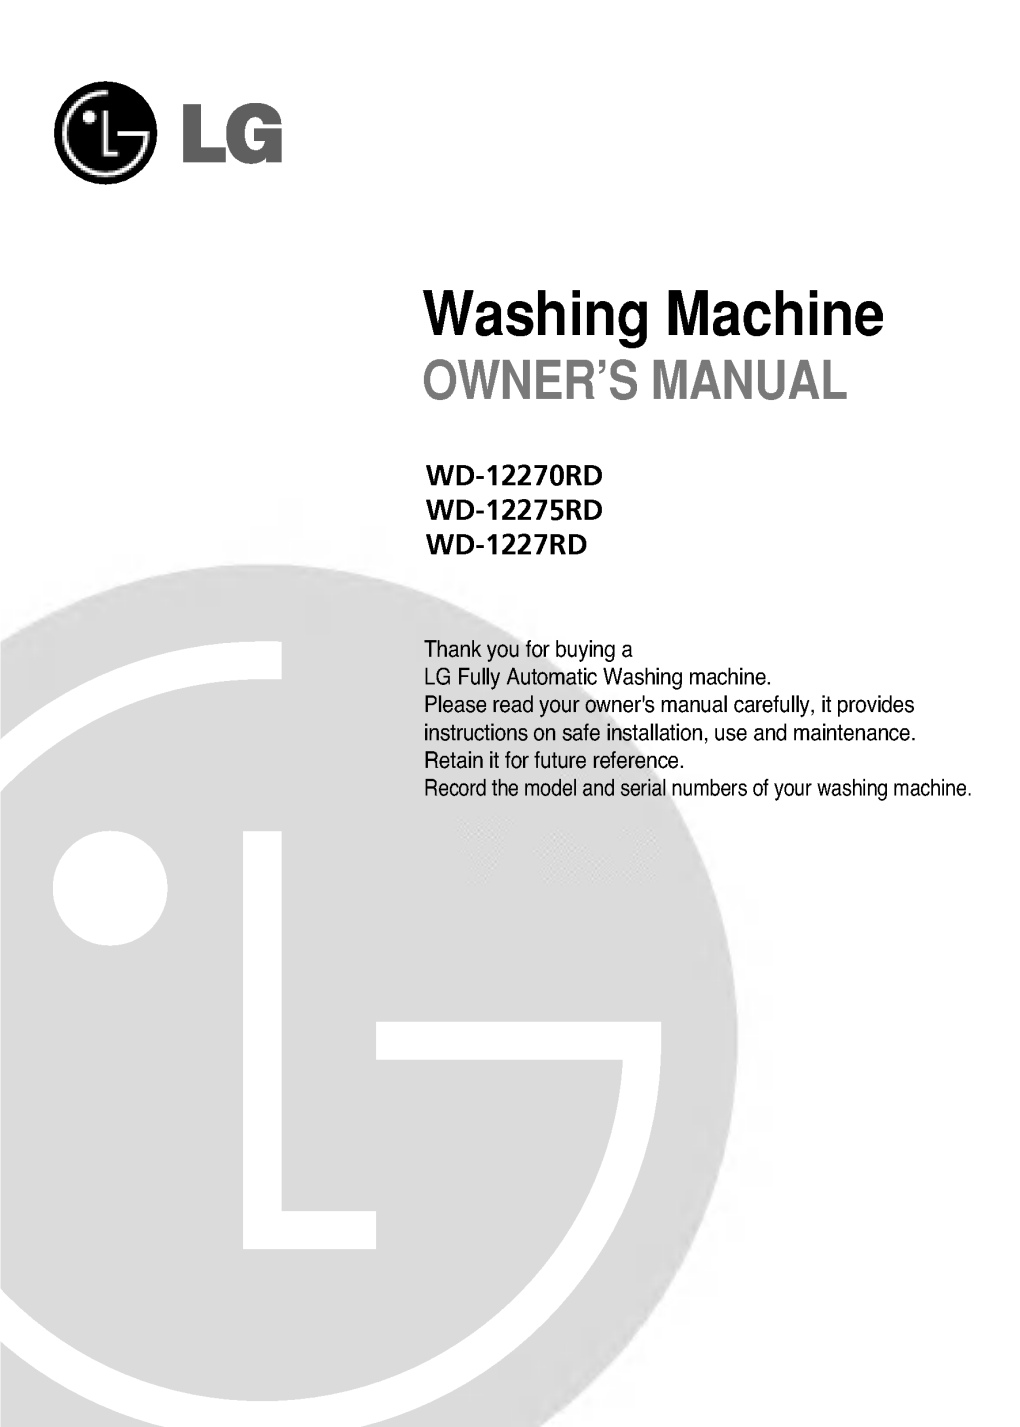 Washing Machine OWNER's MANUAL